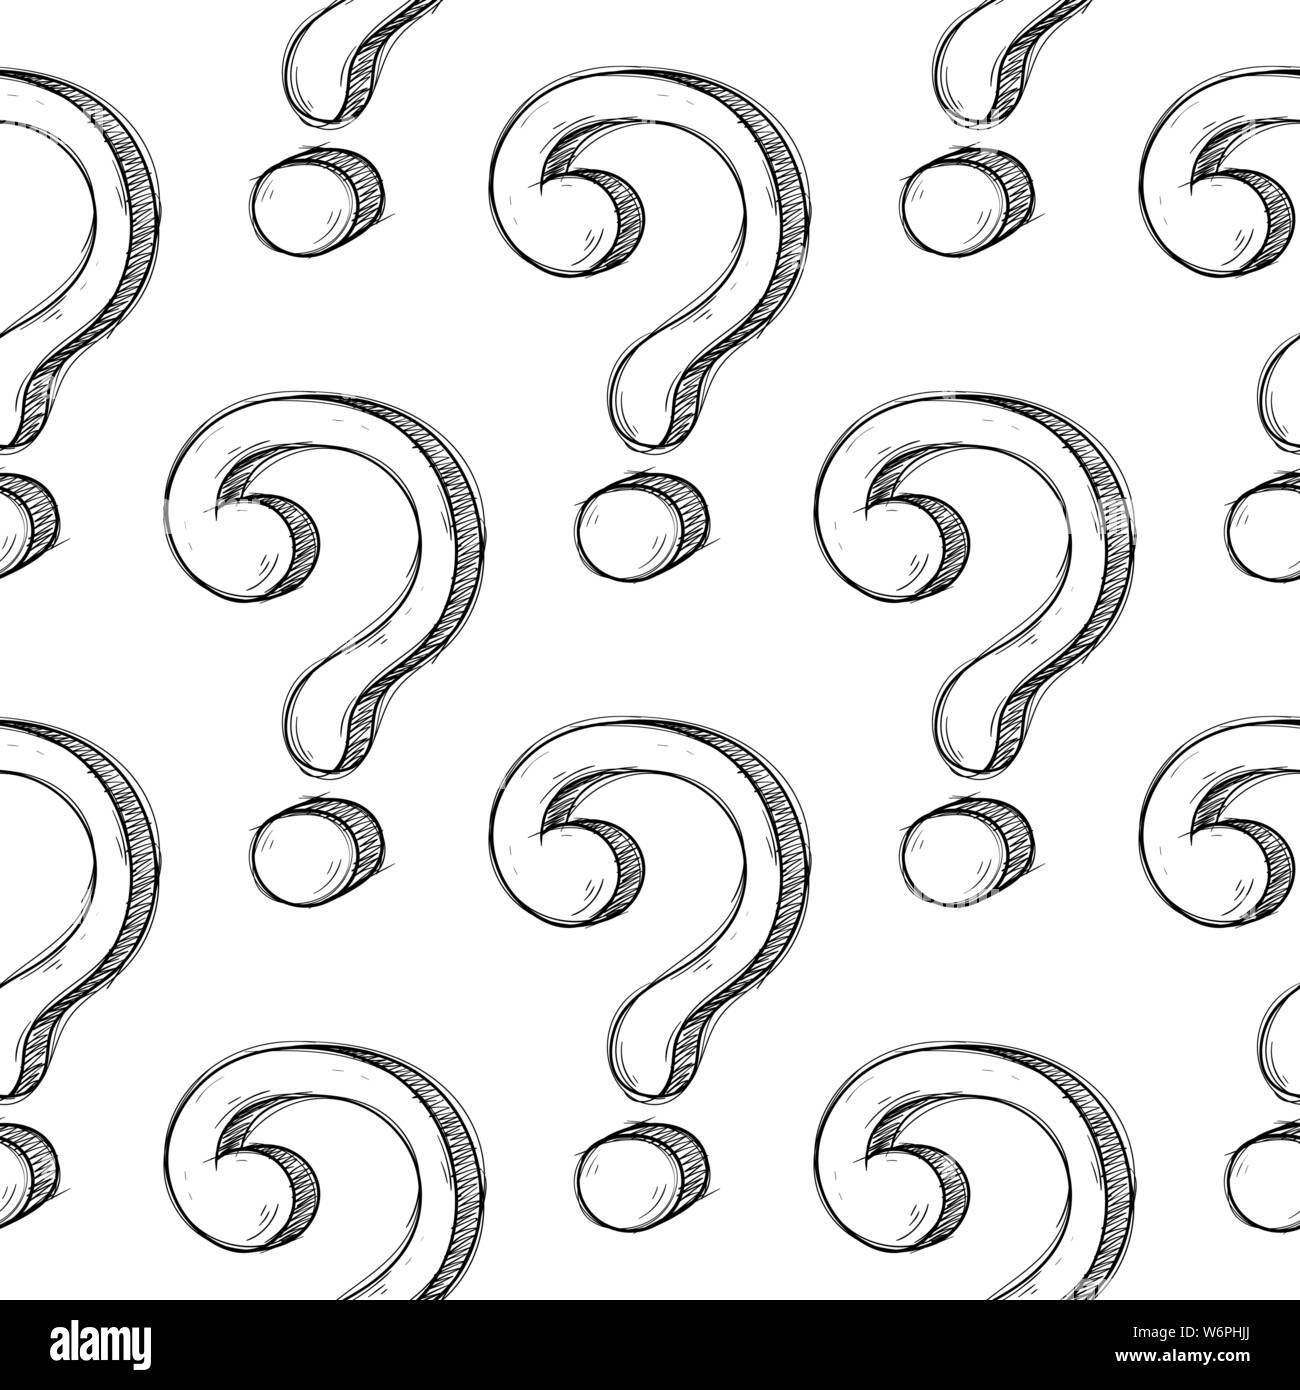 Fragezeichen in nahtlose Muster. Hand doodle erstellt Stock Vektor